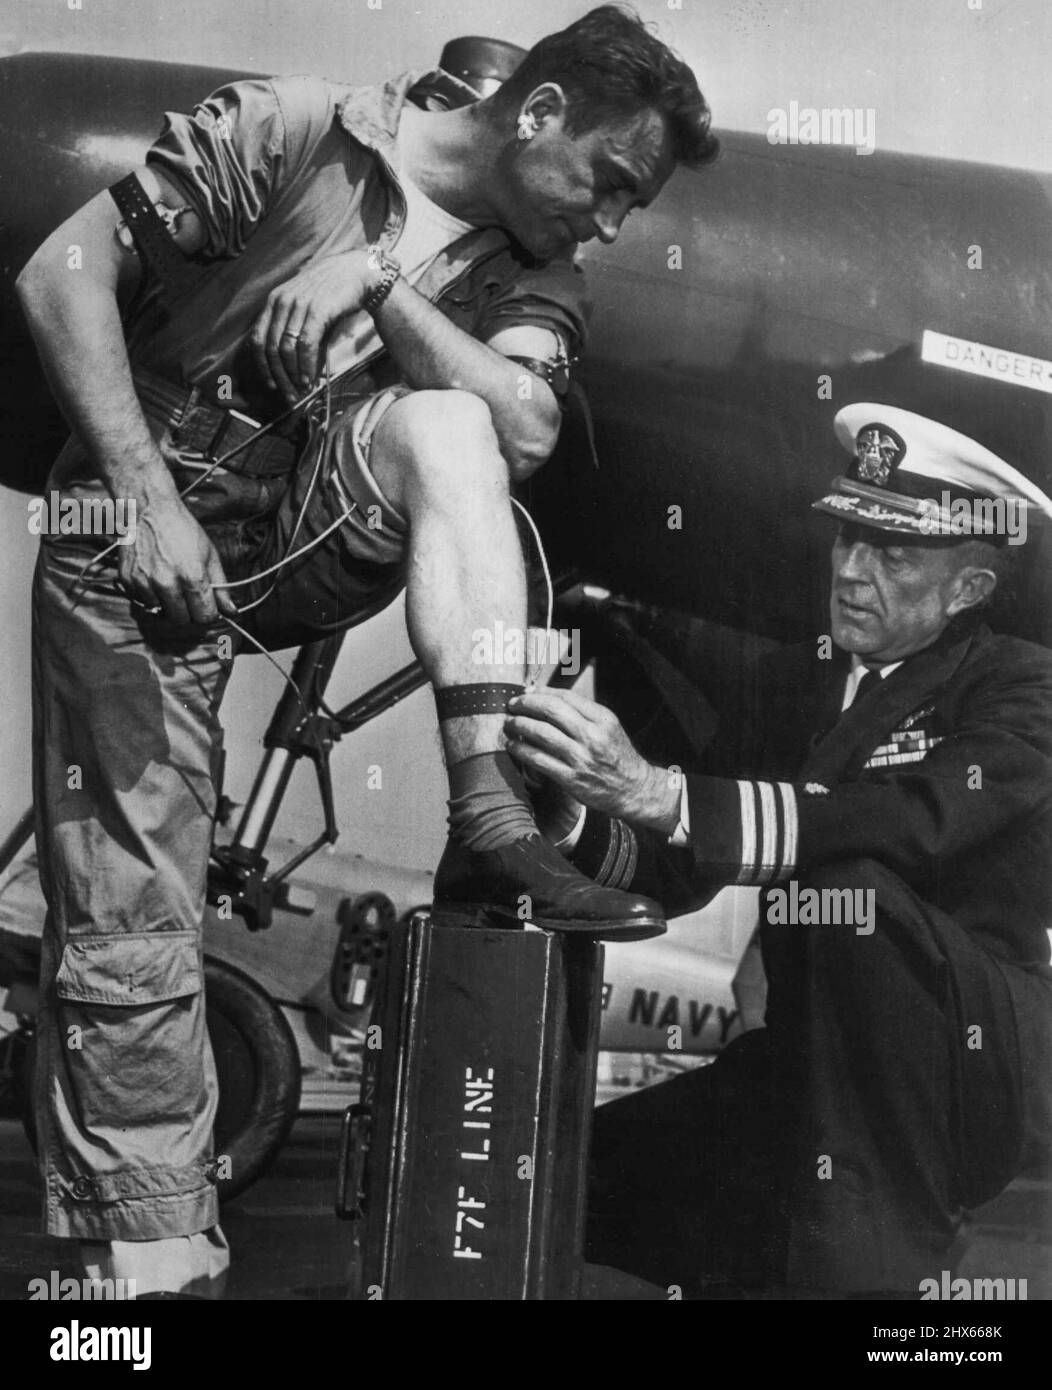 Câblé pour Sound Jet Flying -- chirurgien de vol de la marine Comdr. Norman L. Barr attache des électodes au corps du chef de pilote Joseph Kube lors de la série de tests et d'expériences réussis de la Marine pour vérifier les esprits et les corps des pilotes d'avions à réaction en vol. Les électrodes enregistrent, par le biais d'appareils radio complexes, les réactions cardiaques et respiratoires au cours des différentes étapes du vol. L'équipement a été mis au point en raison du nombre de catastrophes aériennes causées par une « défaillance pilote ». Novembre Banque D'Images